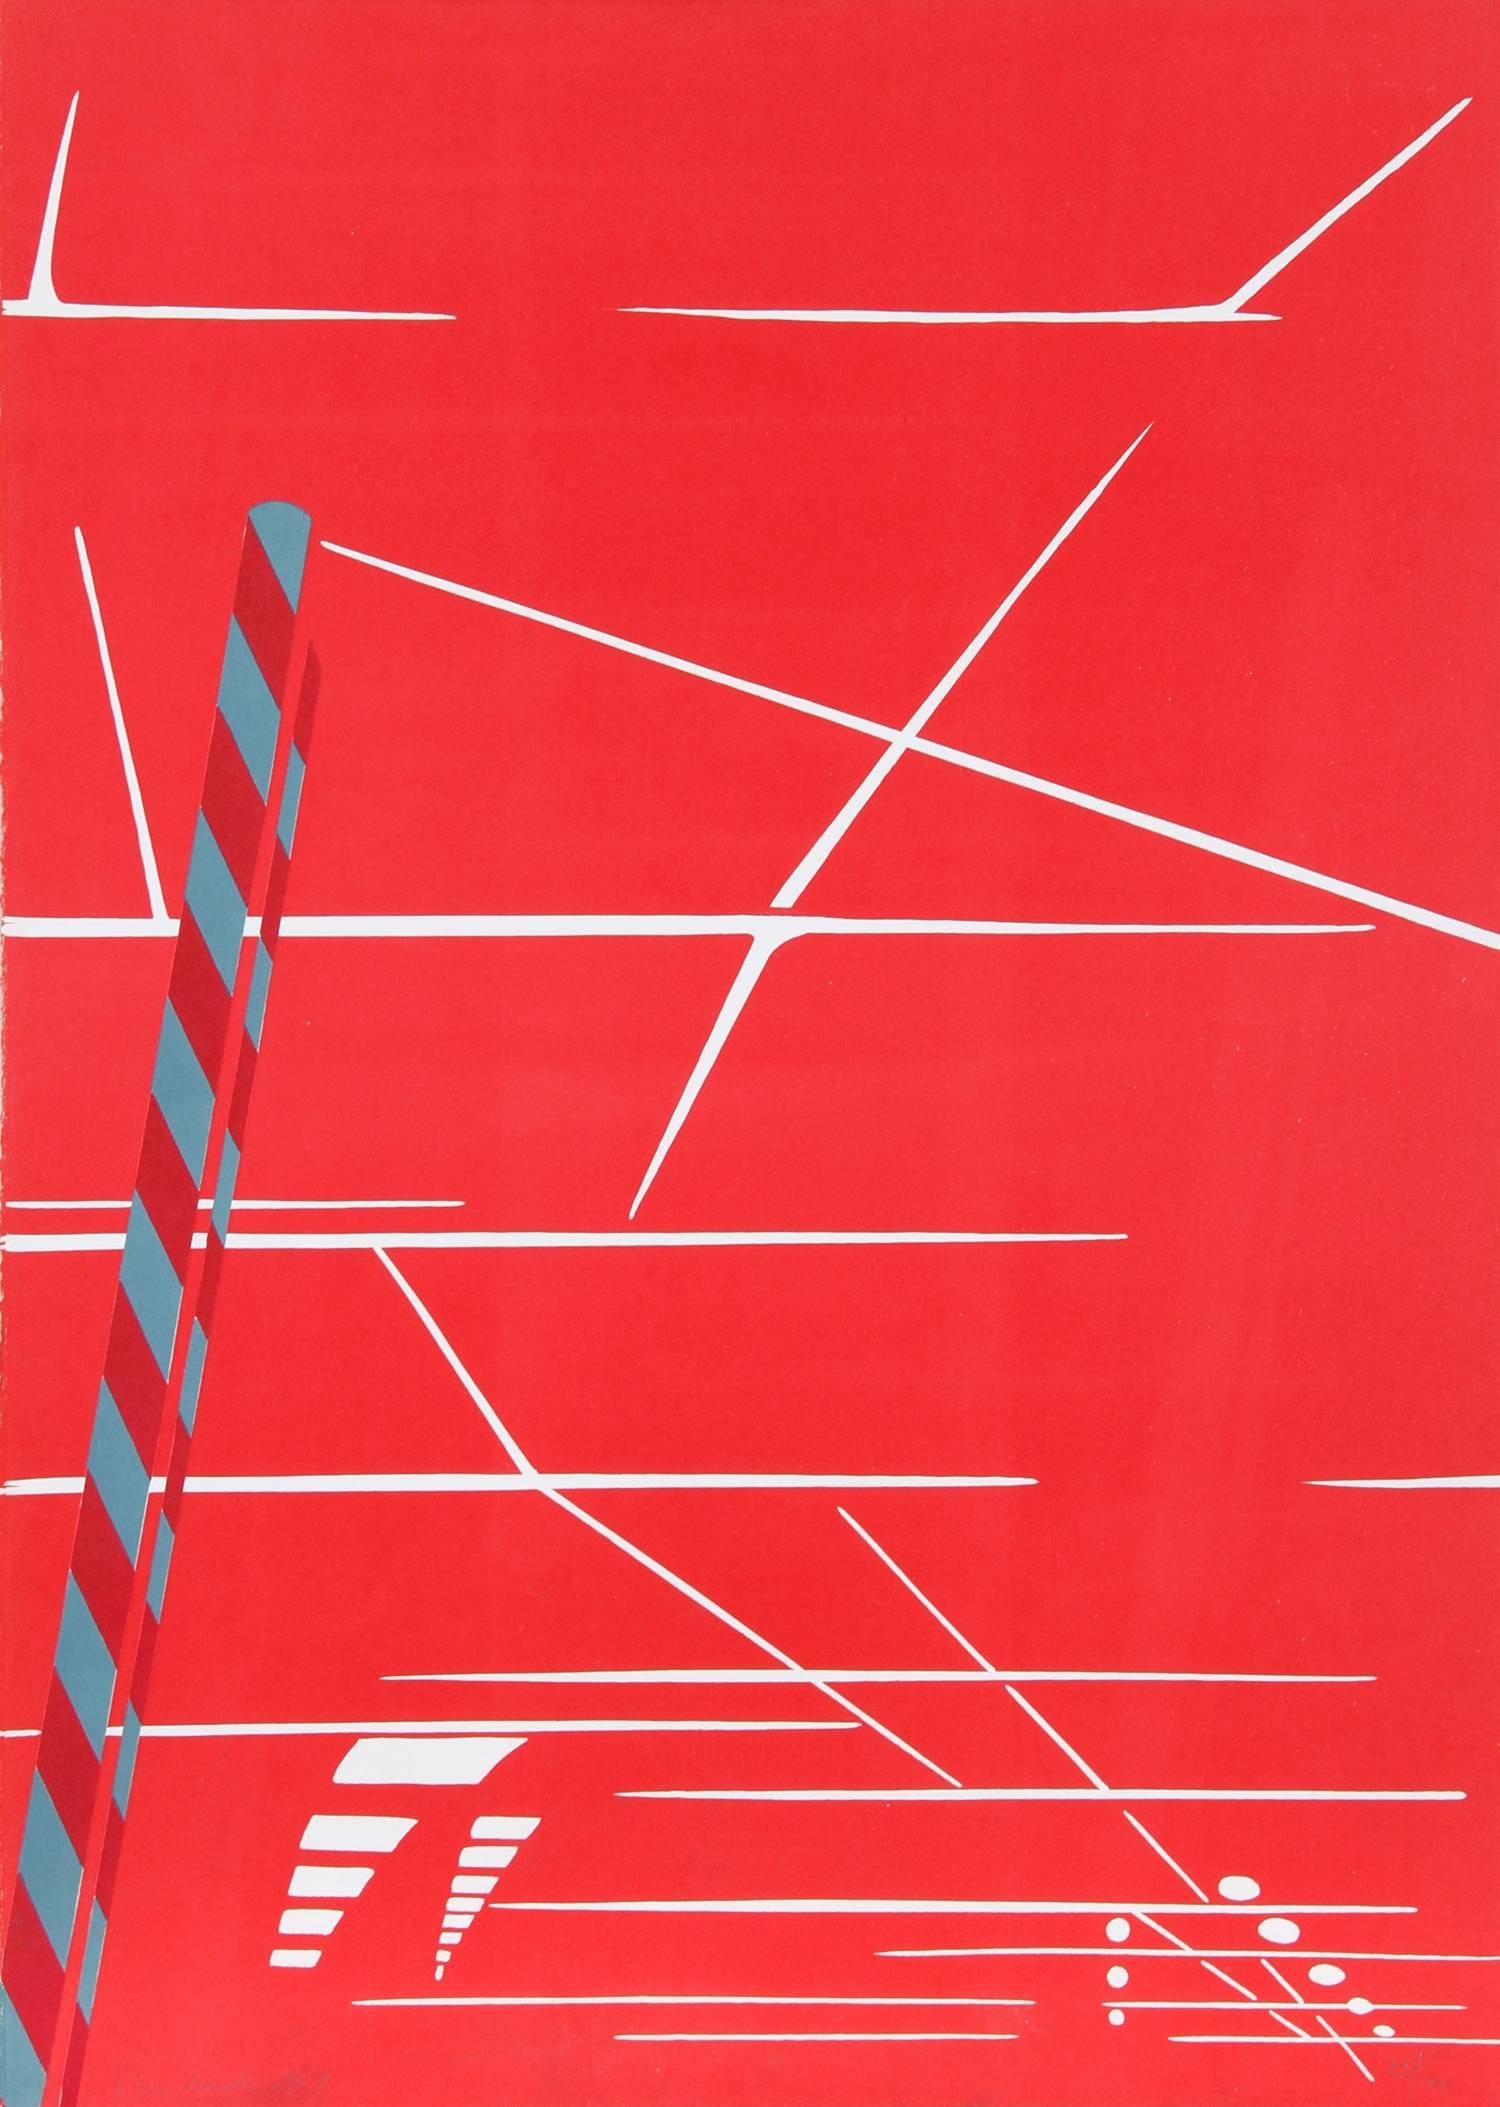 Künstlerin: Titina Maselli, Italienerin (1924 - 2005)
Titel: Unbenannt
Jahr: 1969
Medium: Siebdruck, signiert und nummeriert mit Bleistift
Auflage: 100
Größe: 25,5 in. x 18,5 in. (64,77 cm x 46,99 cm)